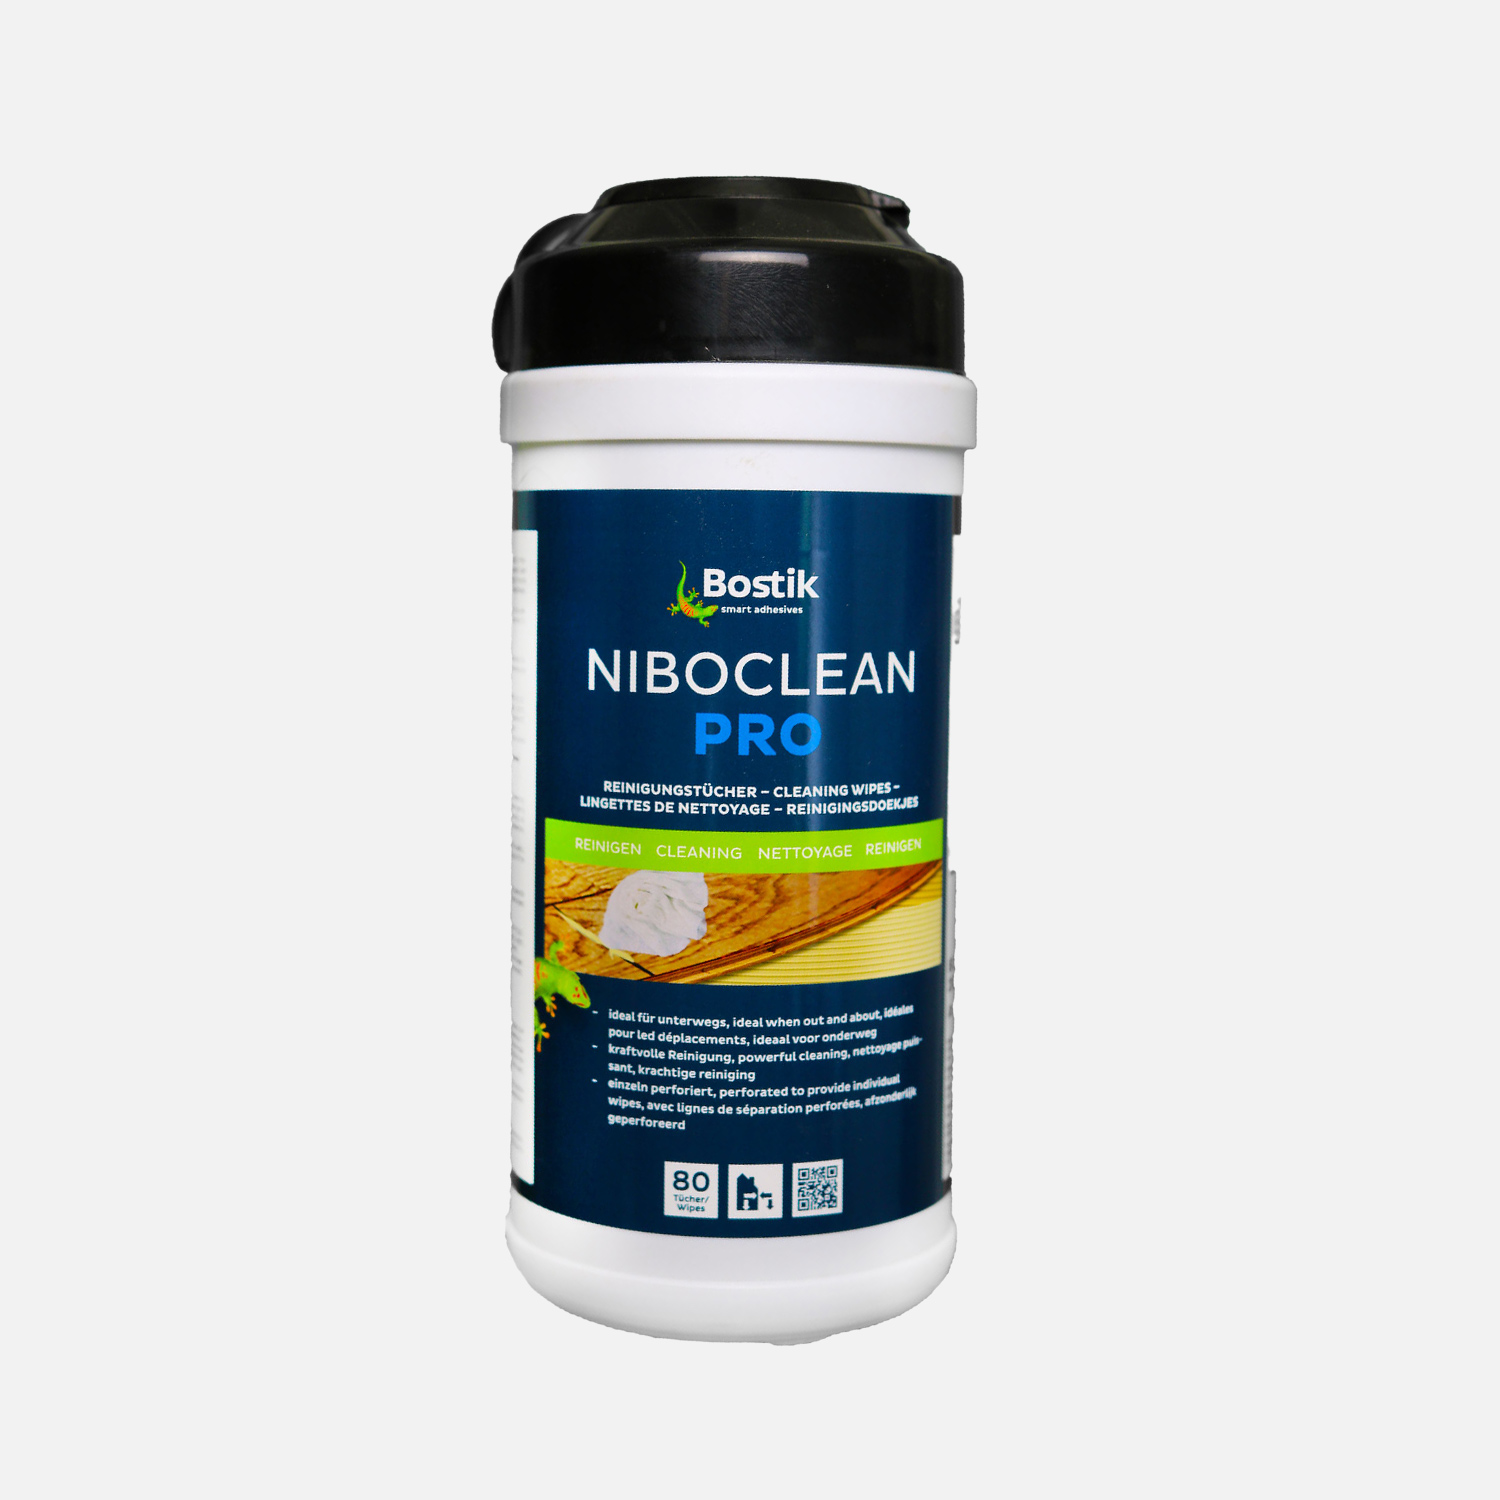 Bostik Niboclean Pro 80 Reinigungstücher